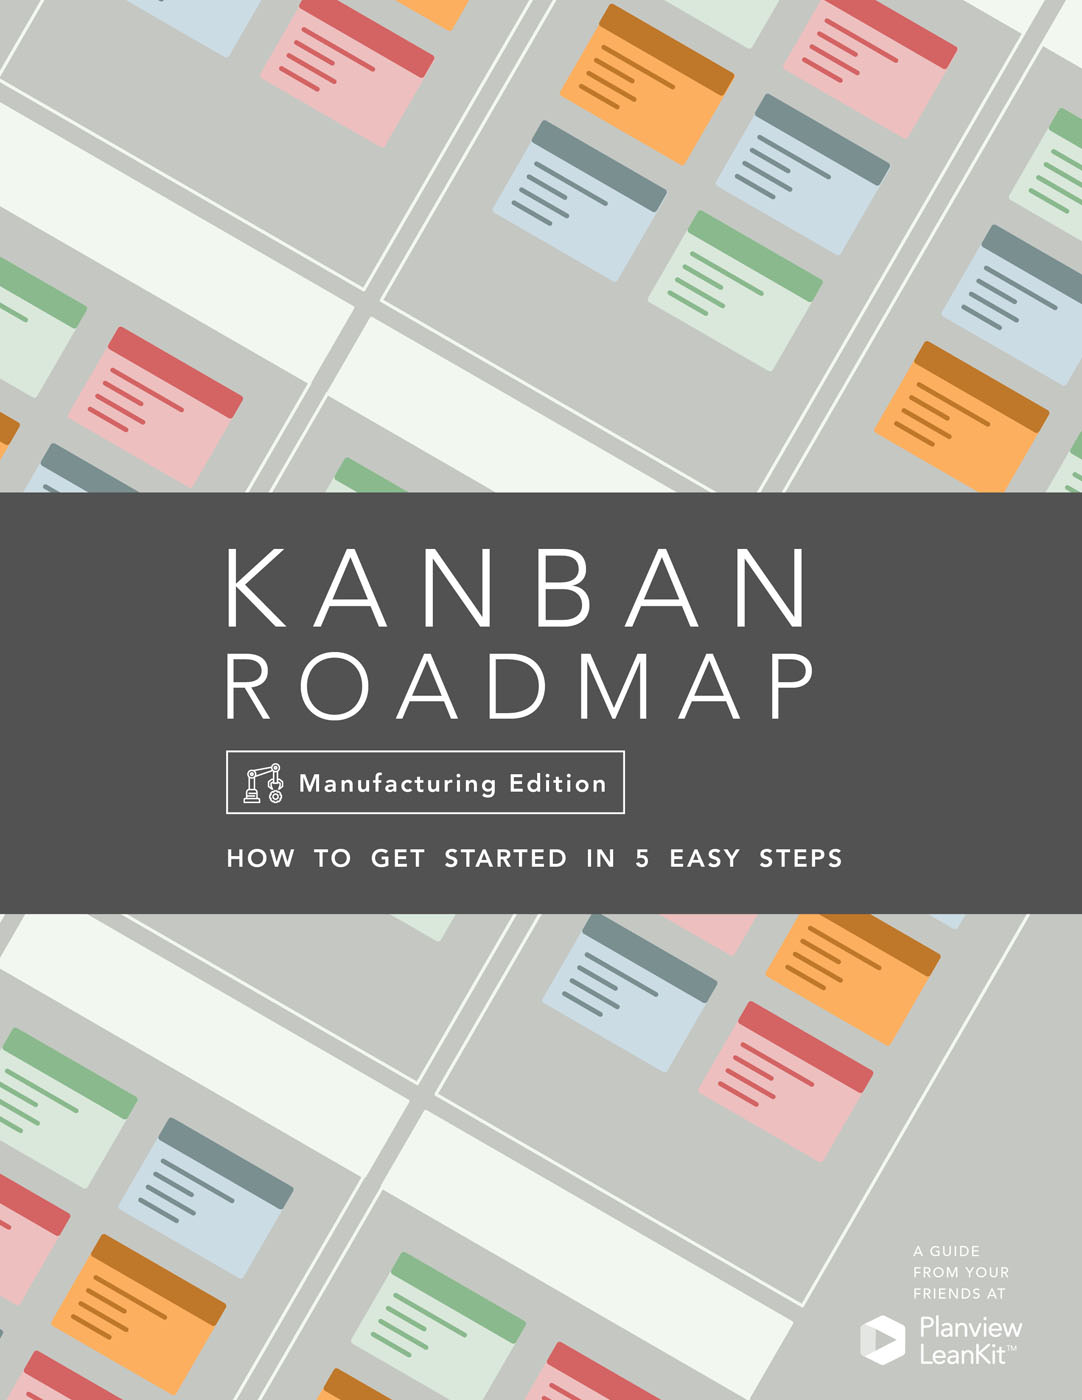 Kanban Roadmap for Manufacturing